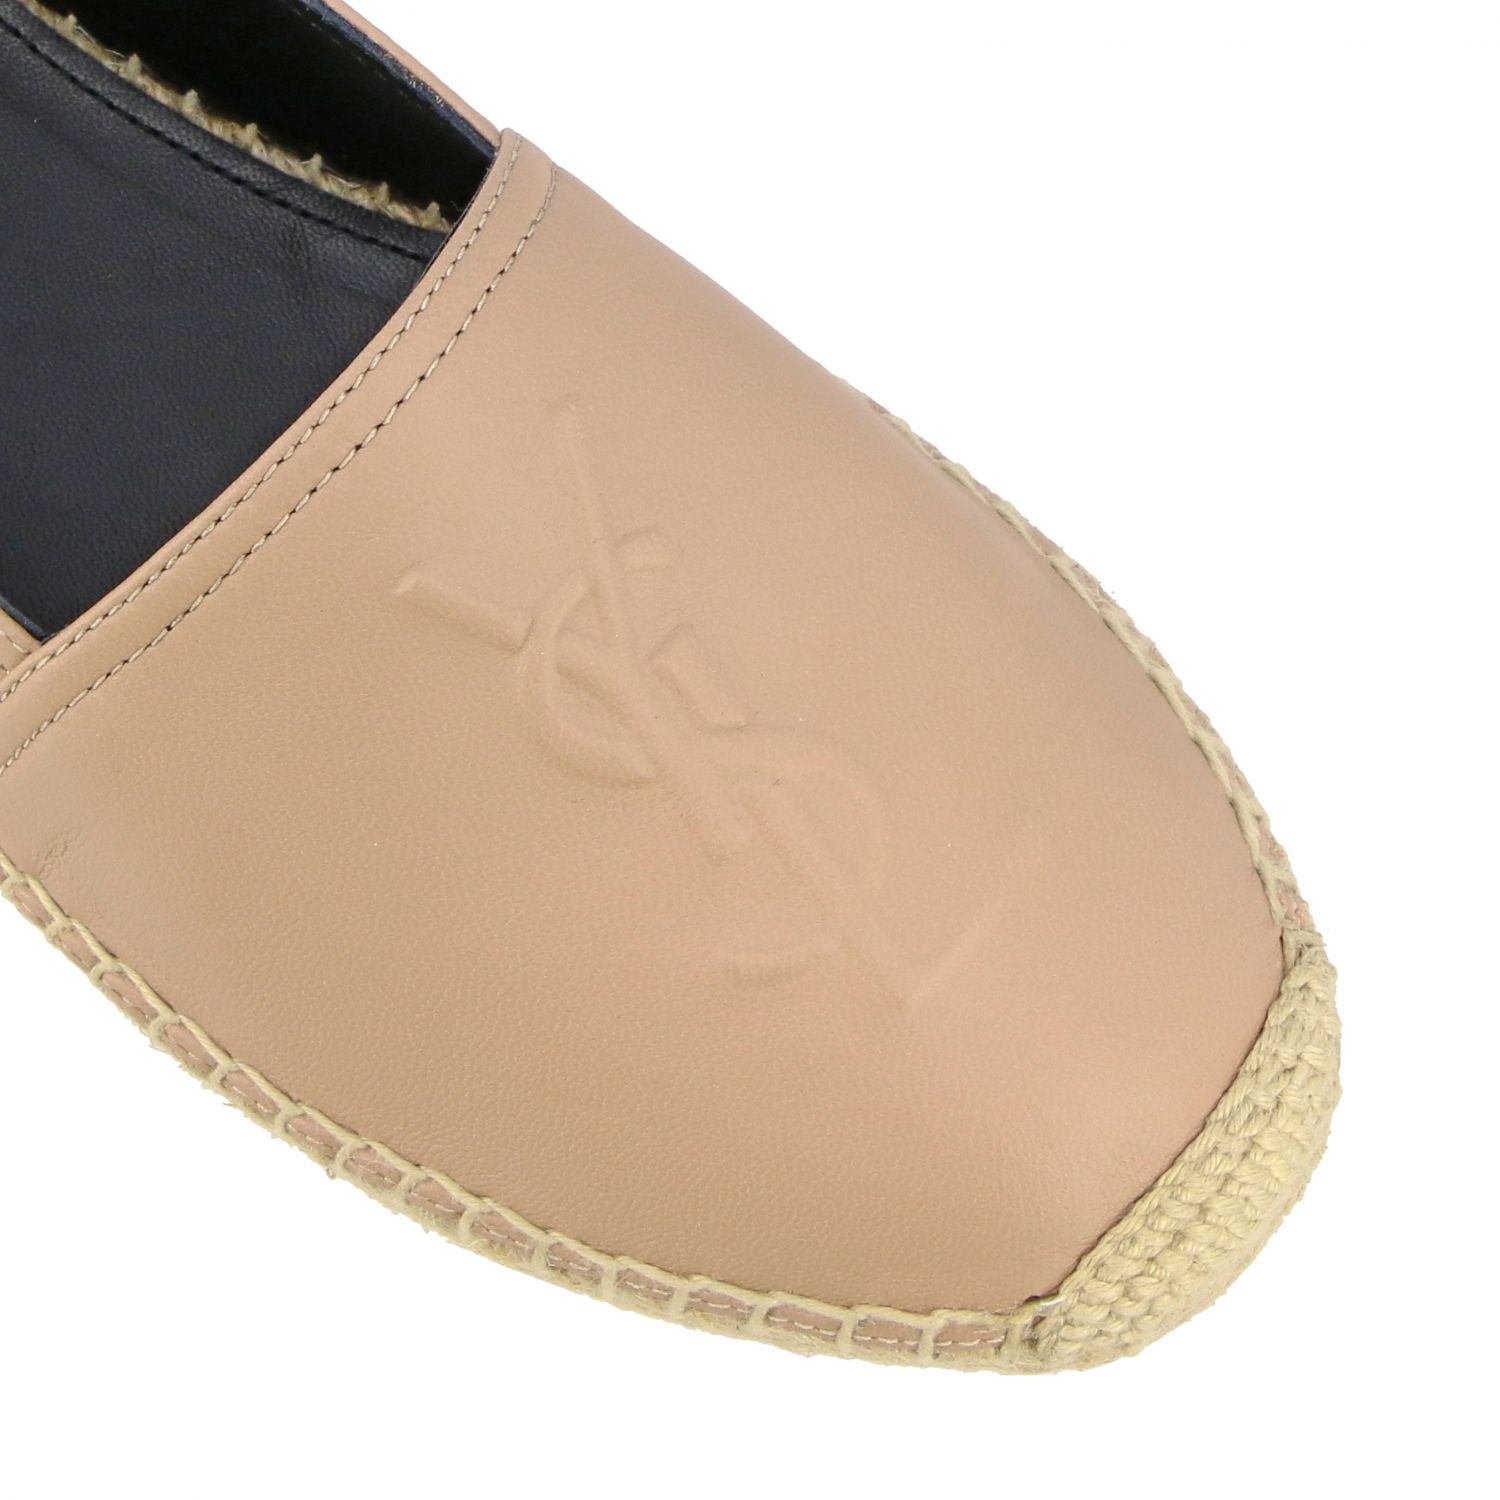 麻底鞋 Saint Laurent: Saint Laurent logo装饰真皮麻底鞋 裸色 4